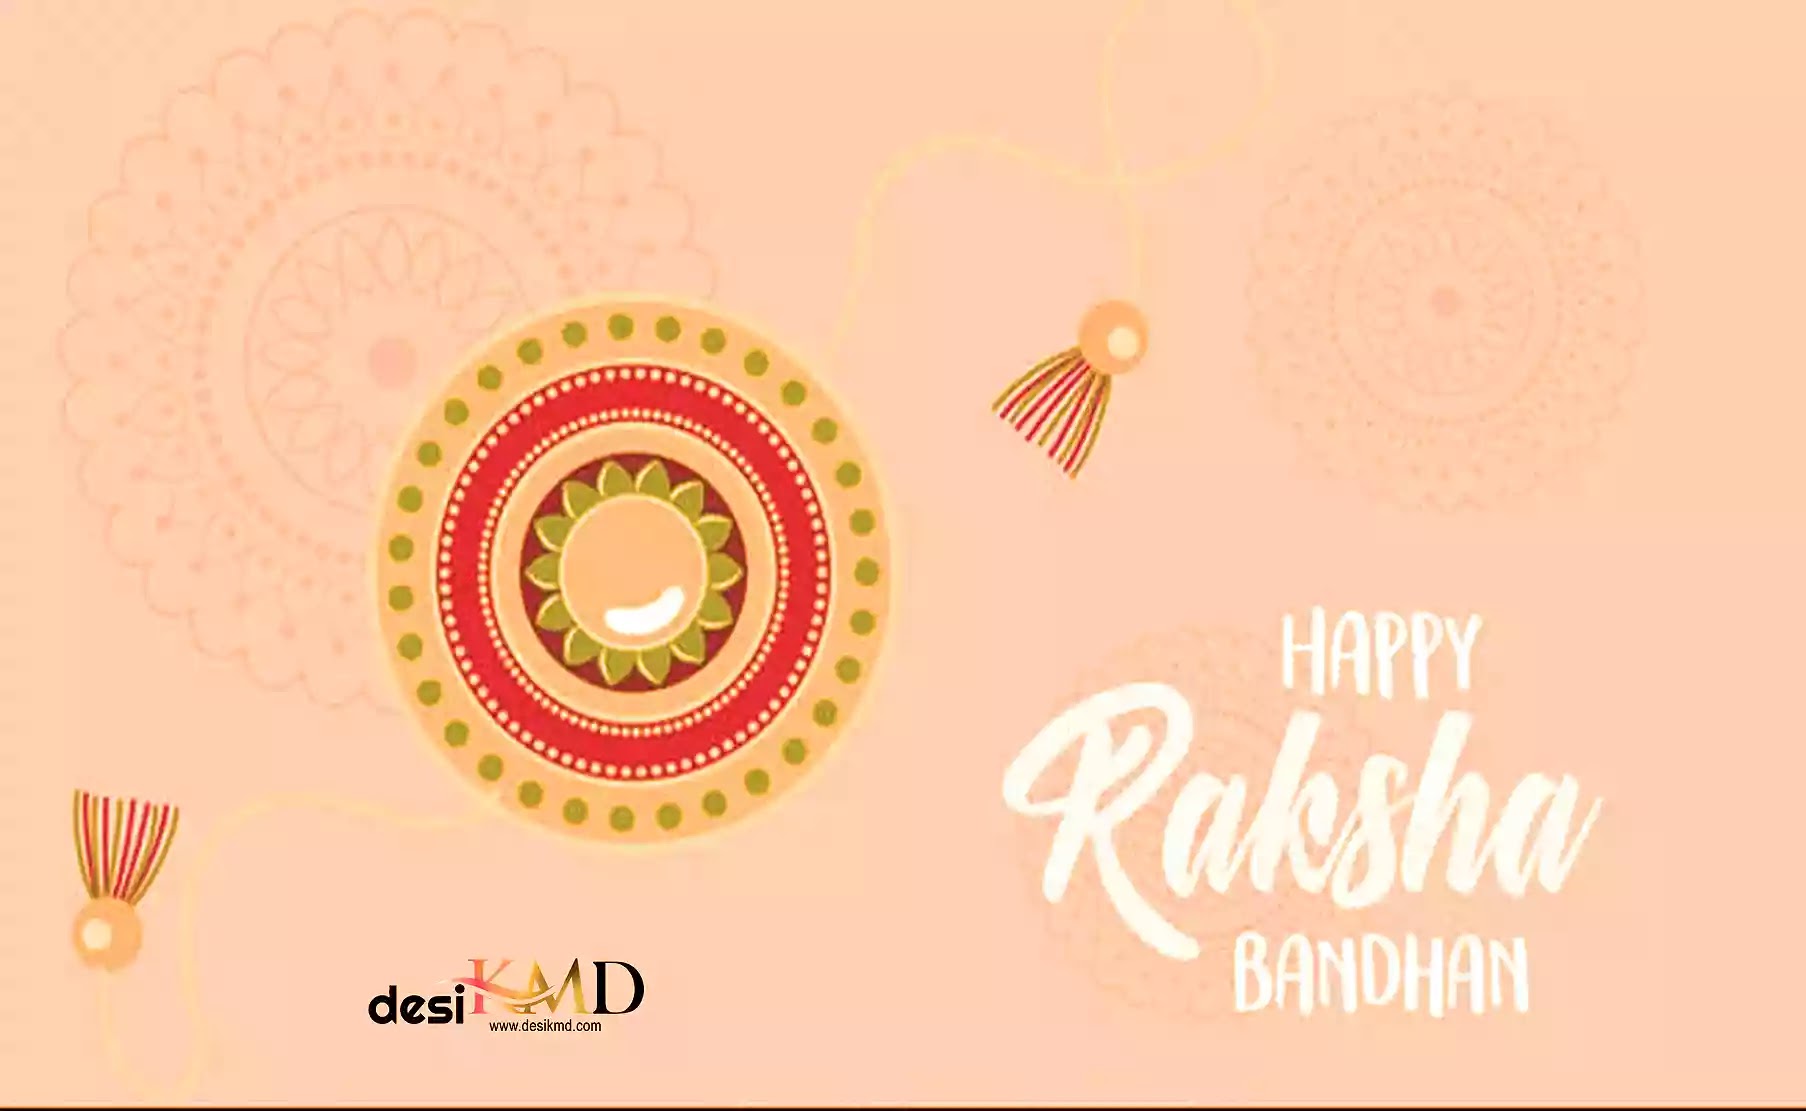 Happy Raksha Bandhan 2022 Hindi Shayari for Brother & Sister  Best Wishes & pictures | भाई और बहन के लिए हैप्पी रक्षा बंधन 2022 शायरी | Desikmd